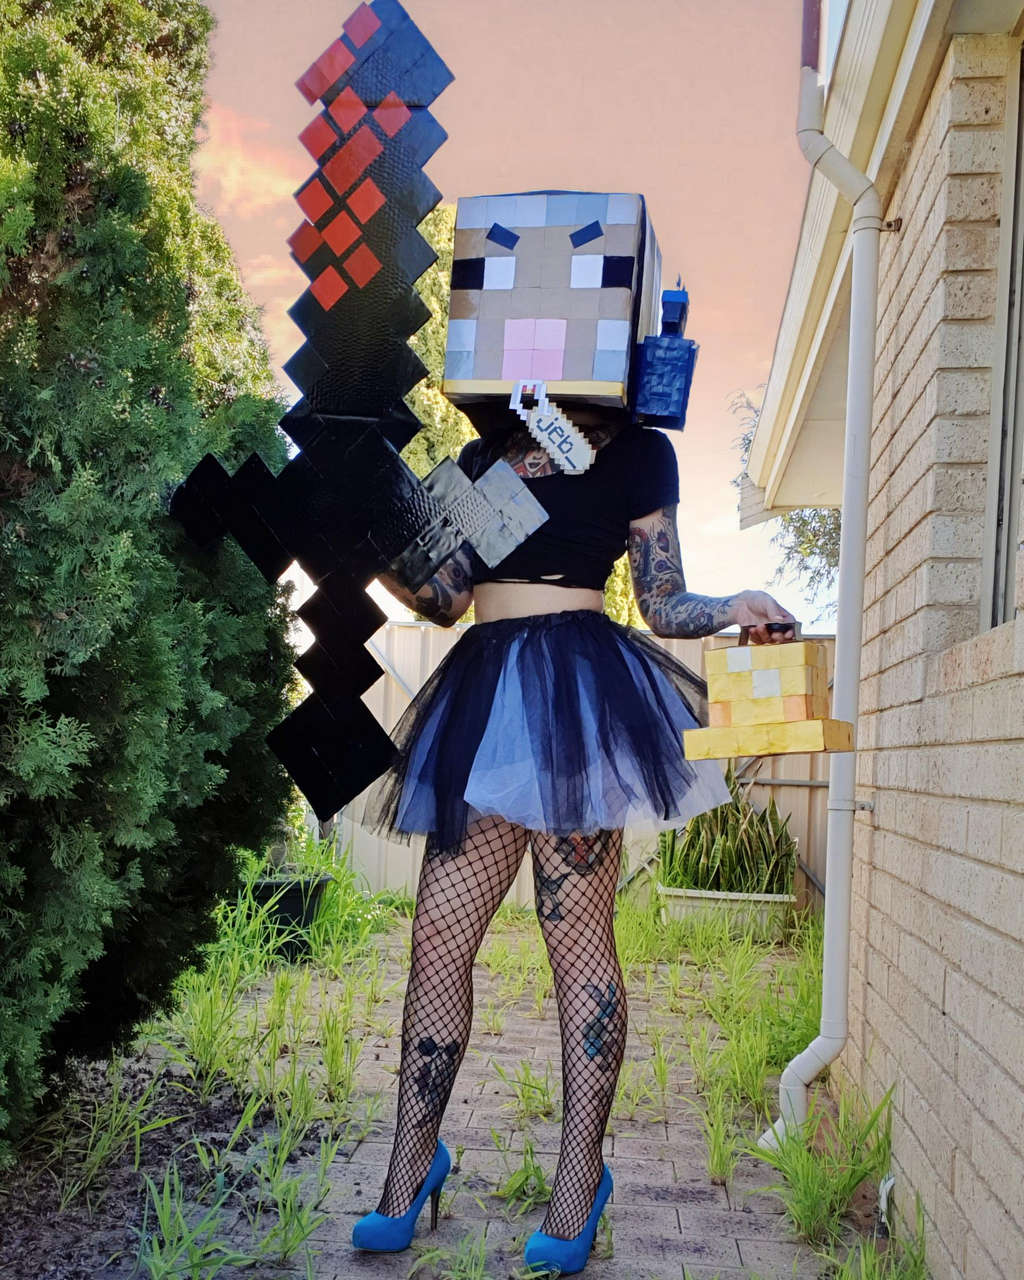 Self Woetersheep And Ikea Bird From Pewdiepies Minecraft Serie